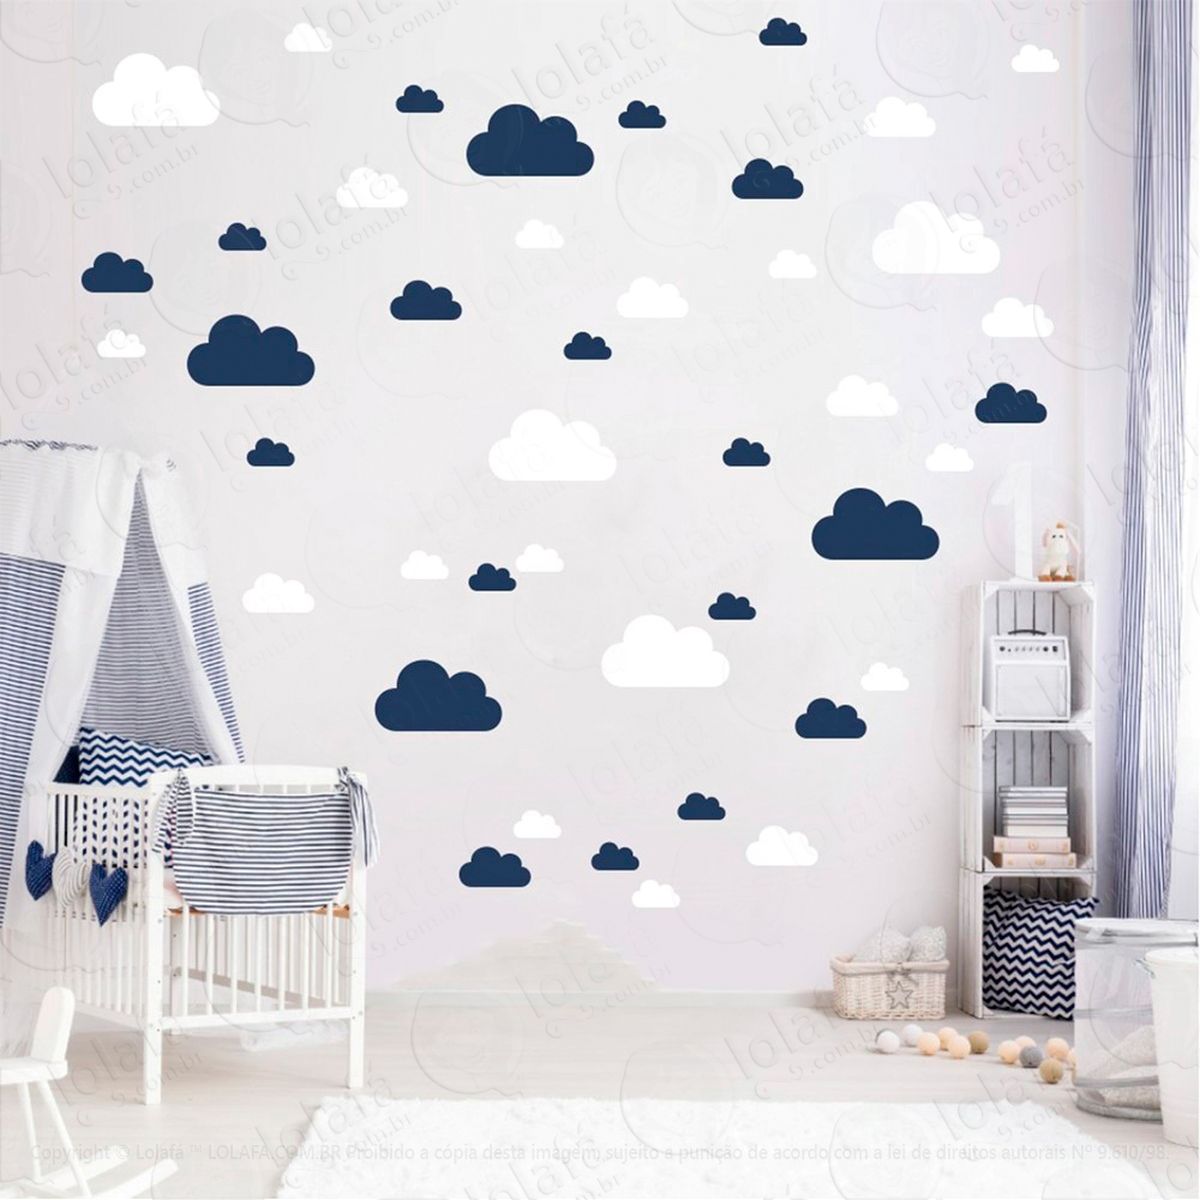 adesivos nuvens 78 peças adesivos para quarto de bebê infantil - mod:766